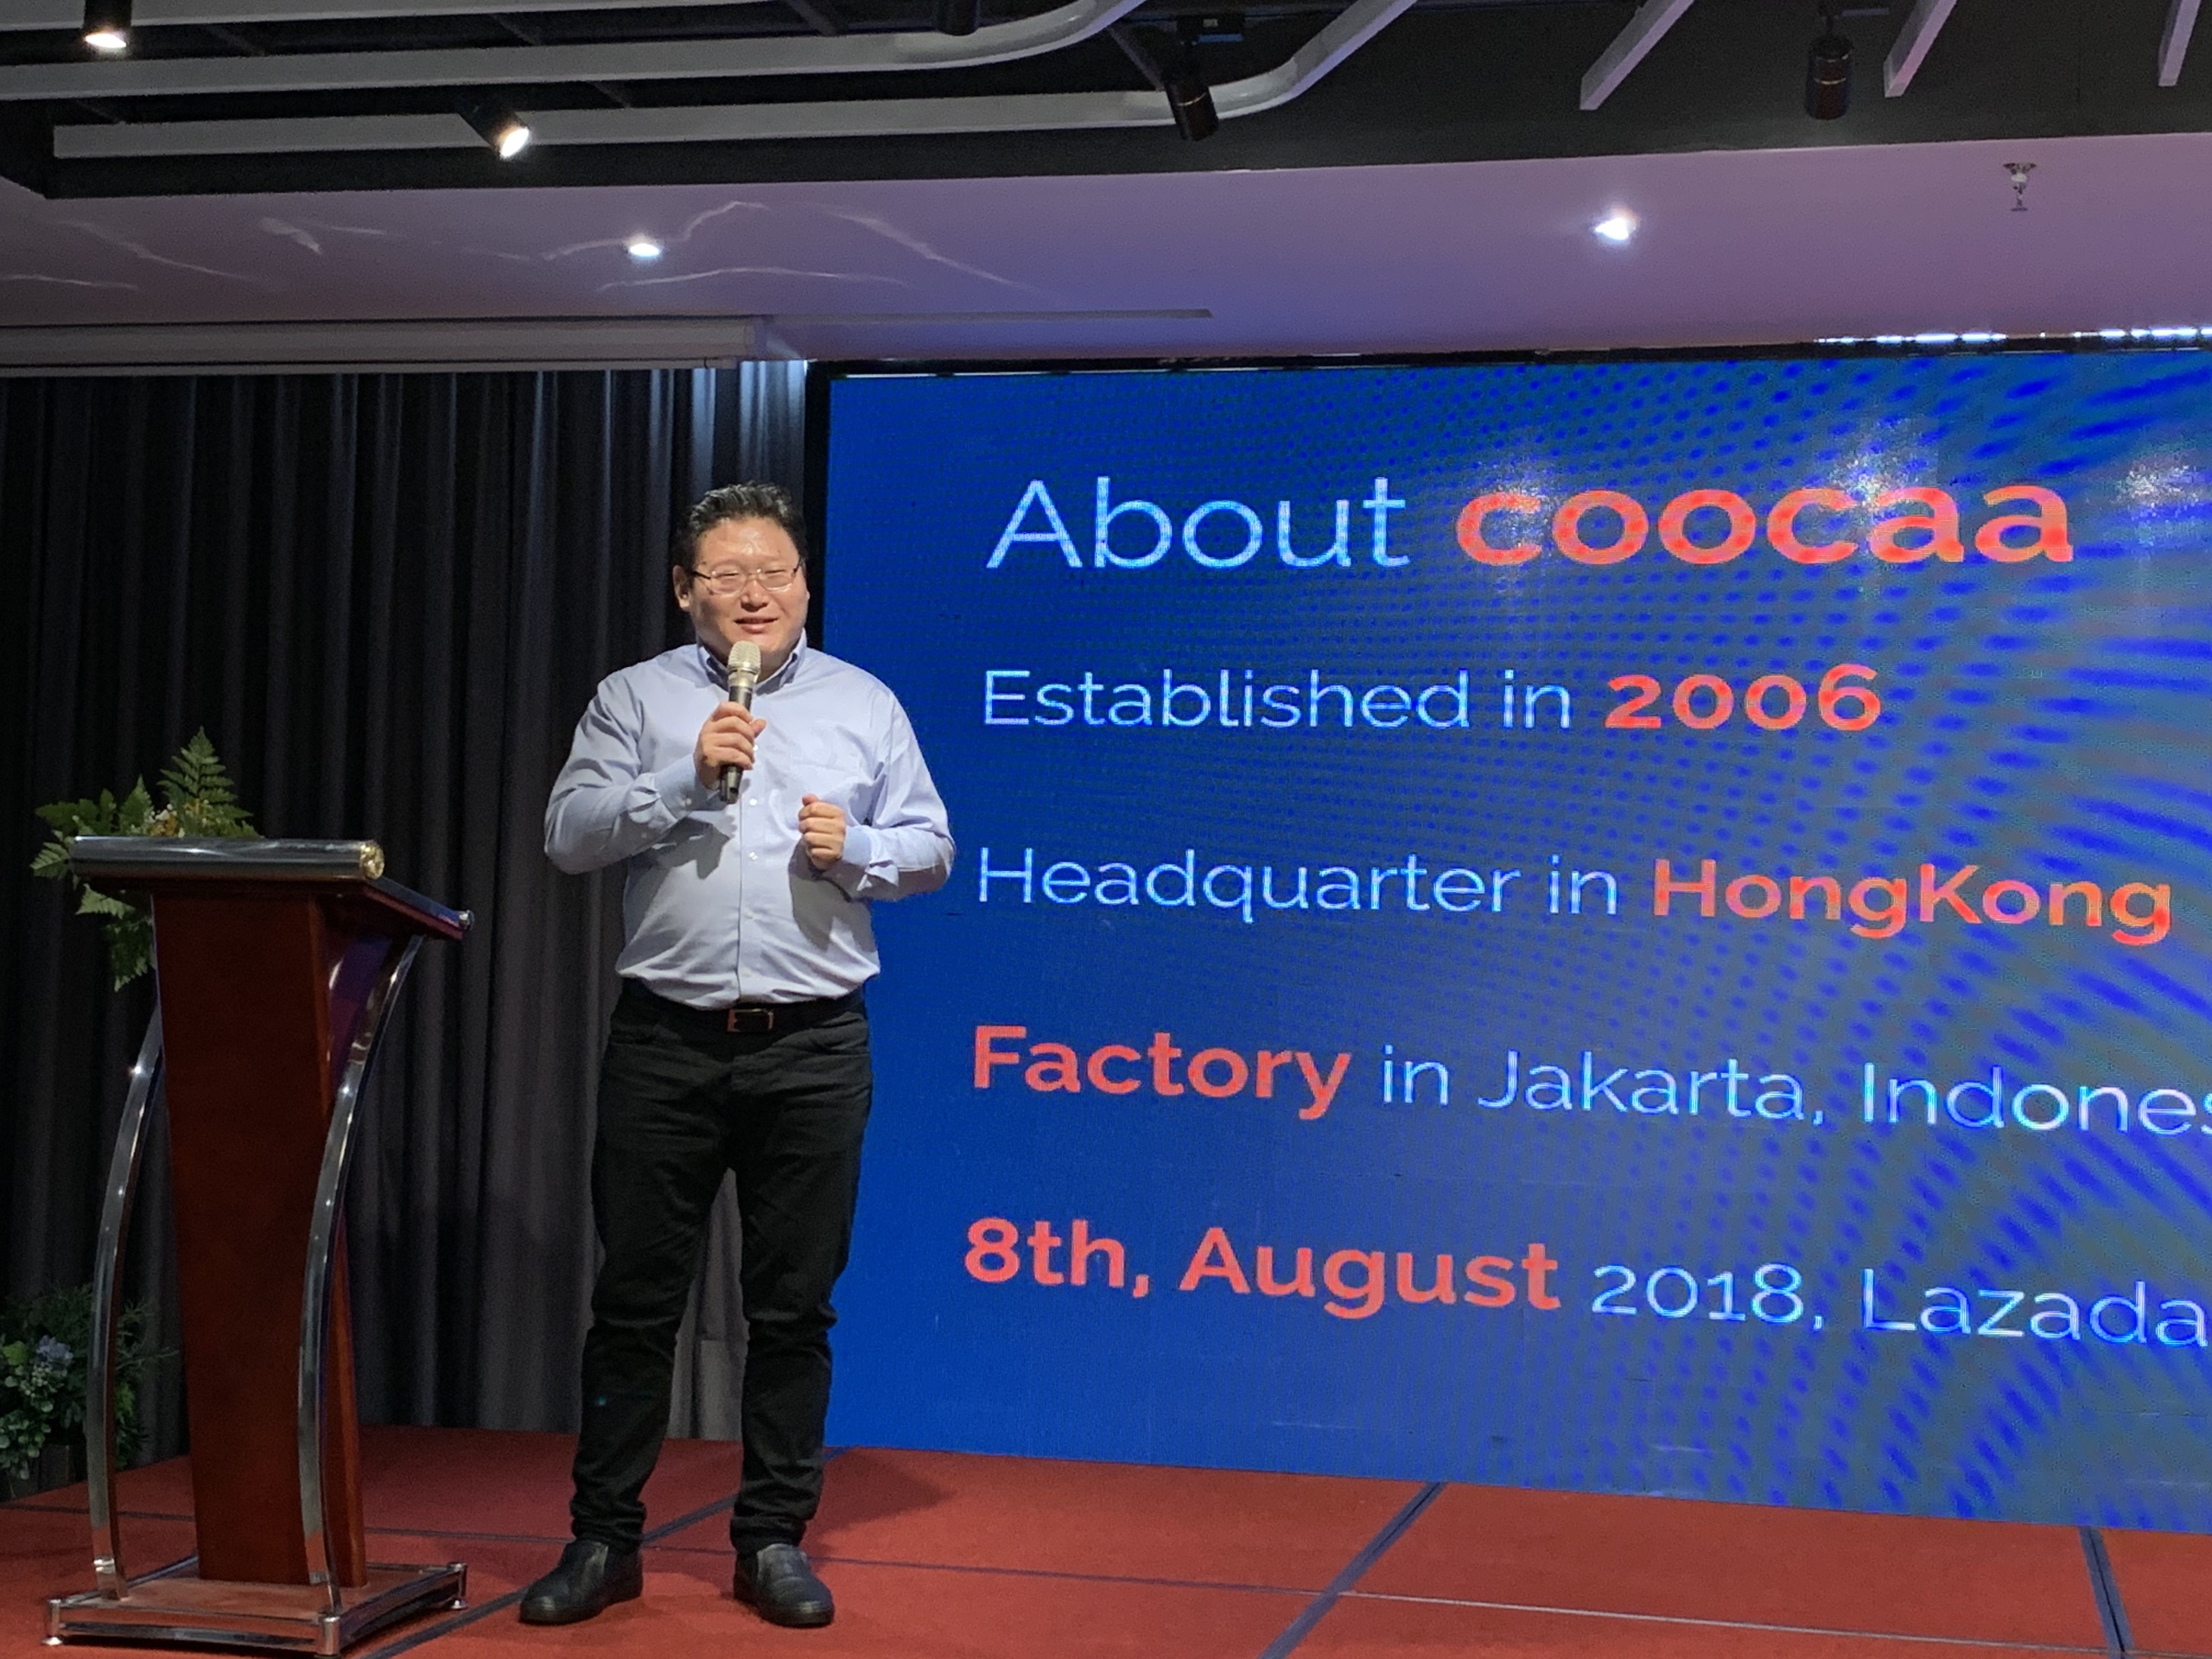 Coocaa đem 5 mẫu TV gia nhập thị trường Việt Nam